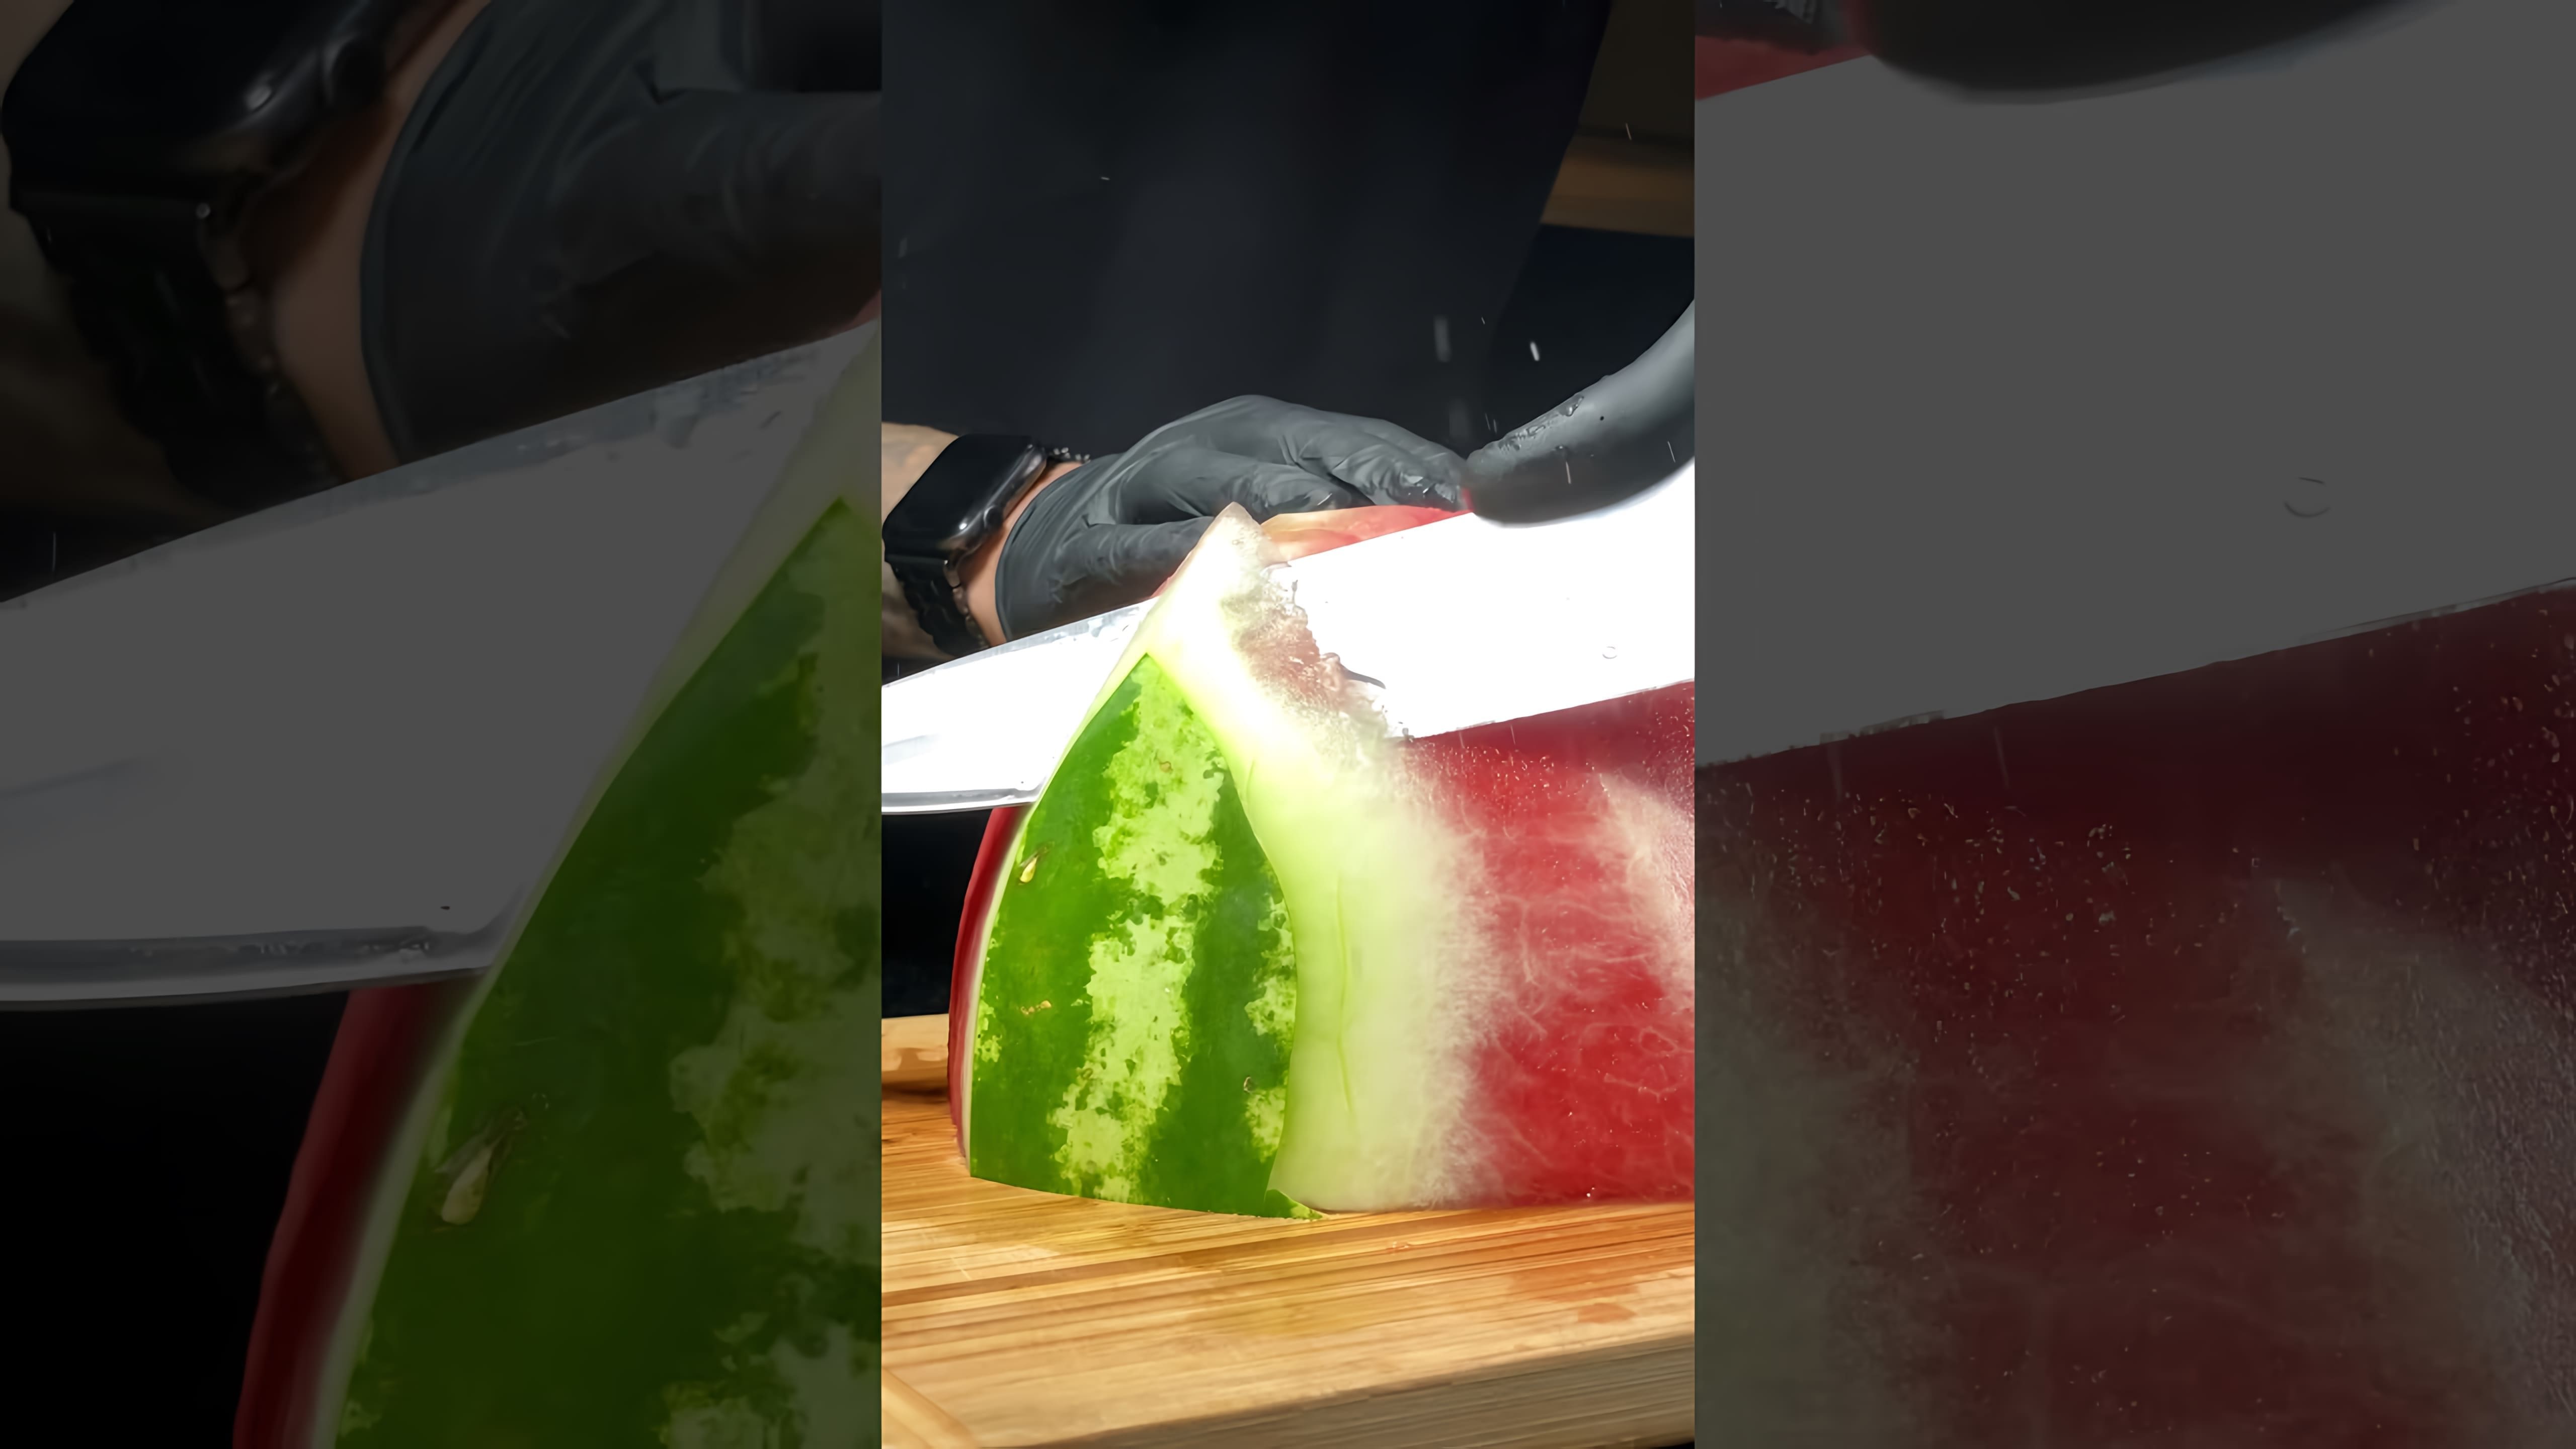 В этом видео демонстрируется процесс приготовления фруктов в стекле